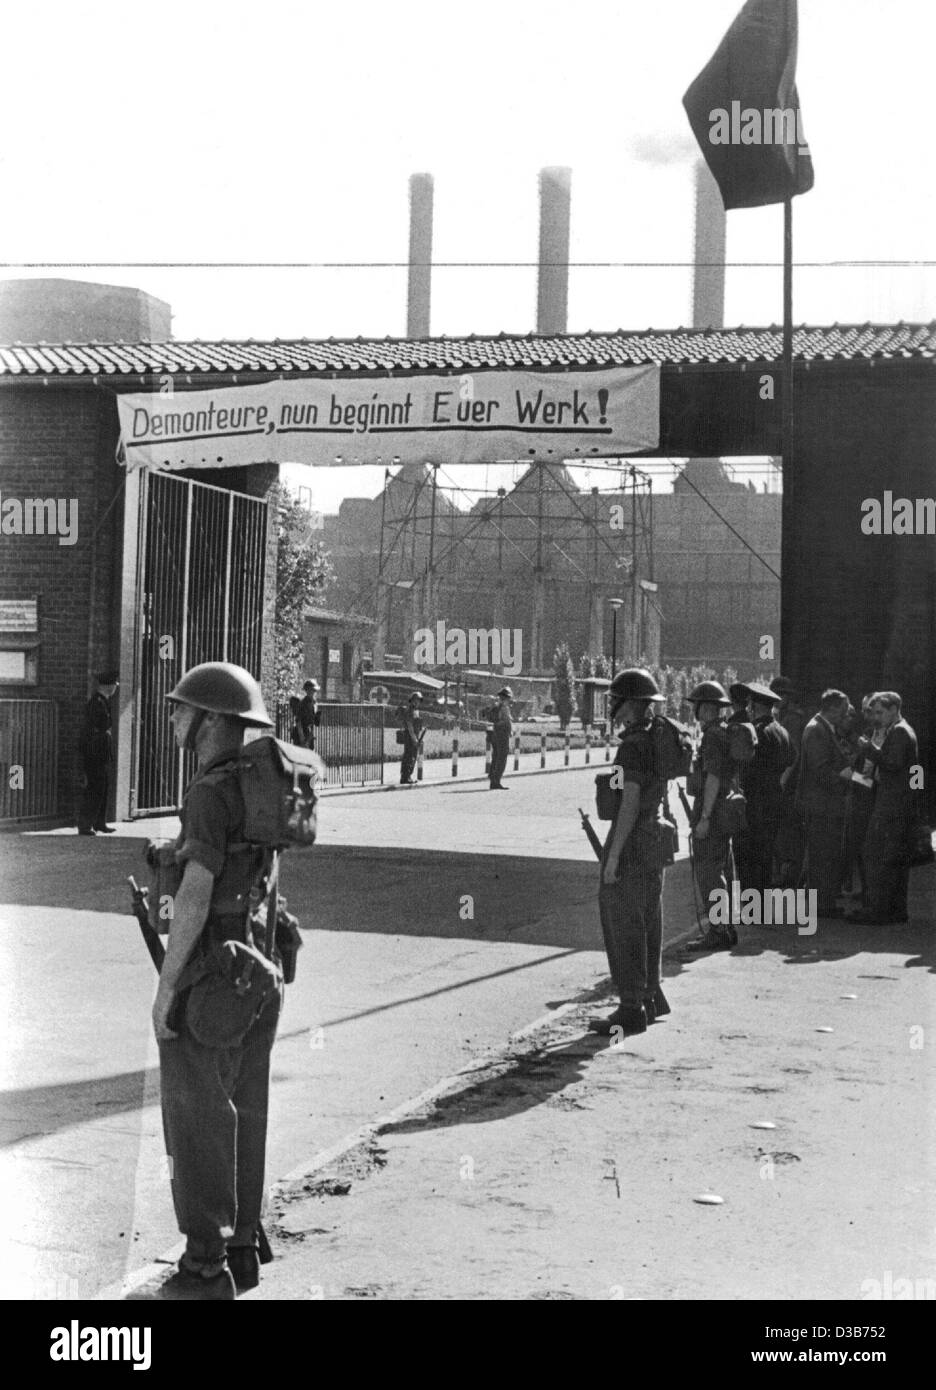 (Dpa-Dateien) - britische Soldaten bewachen die Straße zum Eingang des Chemiewerks Ruhrchemie in Oberhausen, Deutschland, 5. September 1949. Die Fahne auf dem Tor lautet: "Altautoverwerter, jetzt beginnen Ihre Arbeit!" Stockfoto